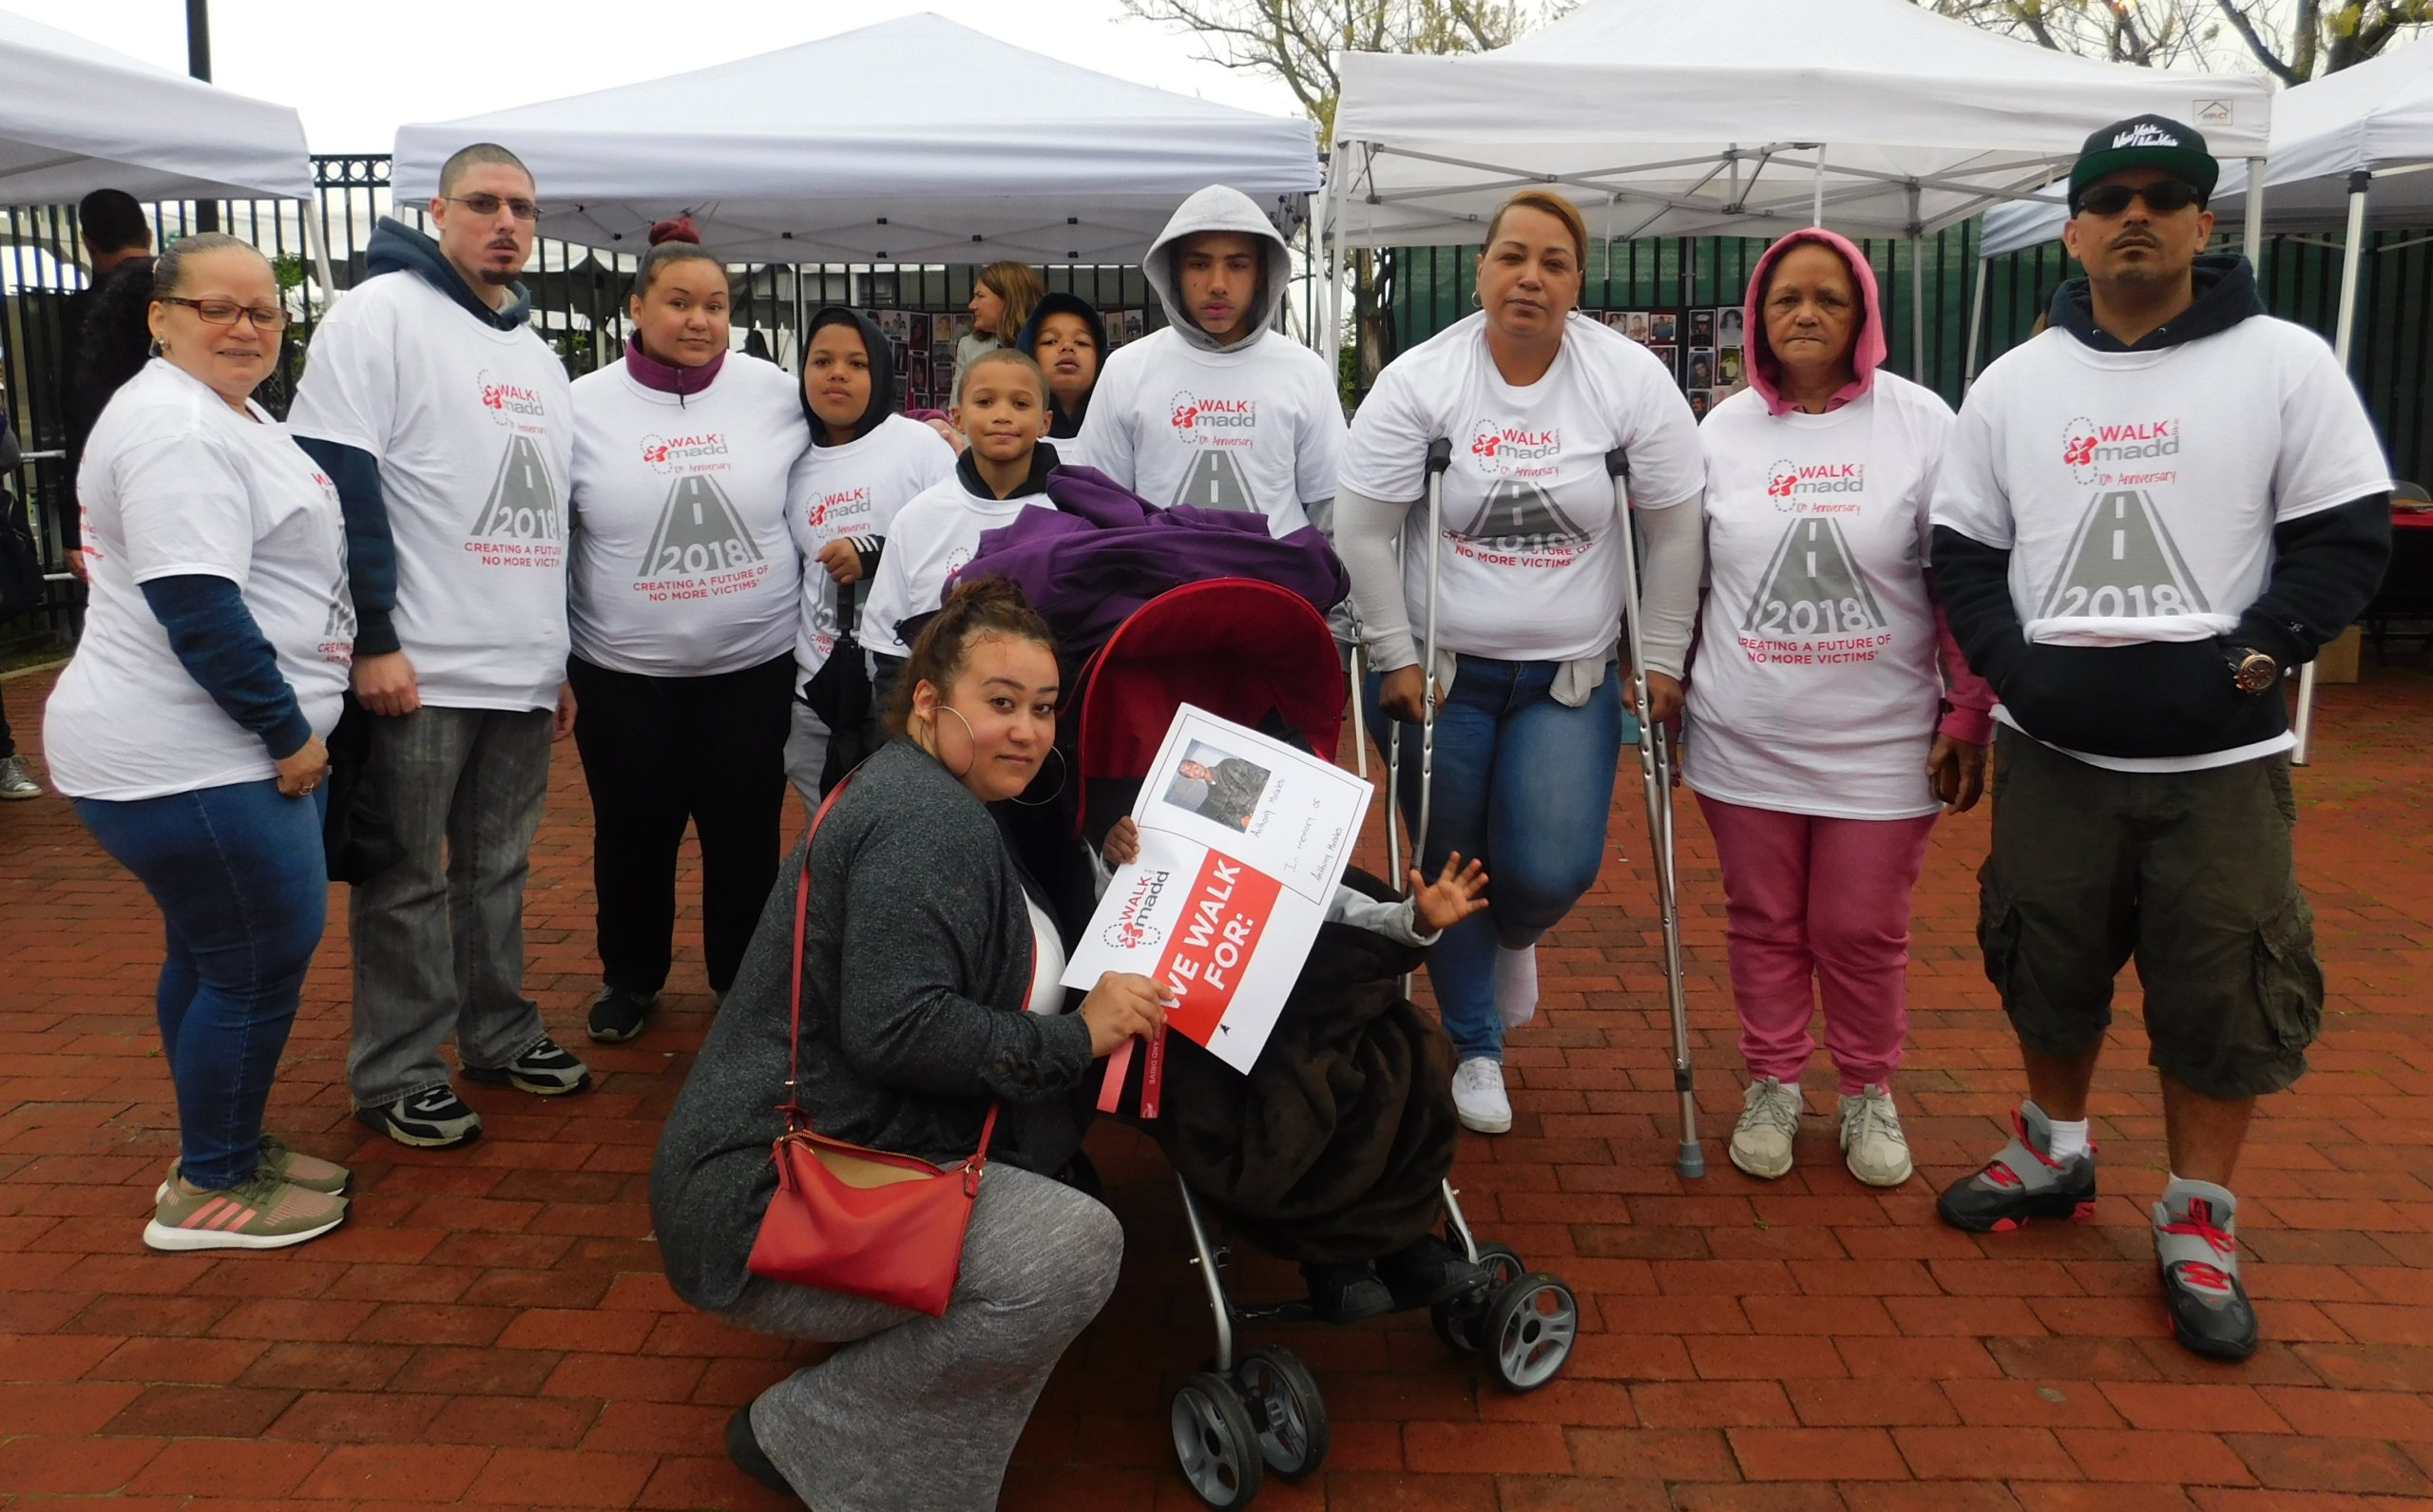 Madres y familias de Long Island lanzan mensaje por un futuro sin víctimas de conductores ebrios